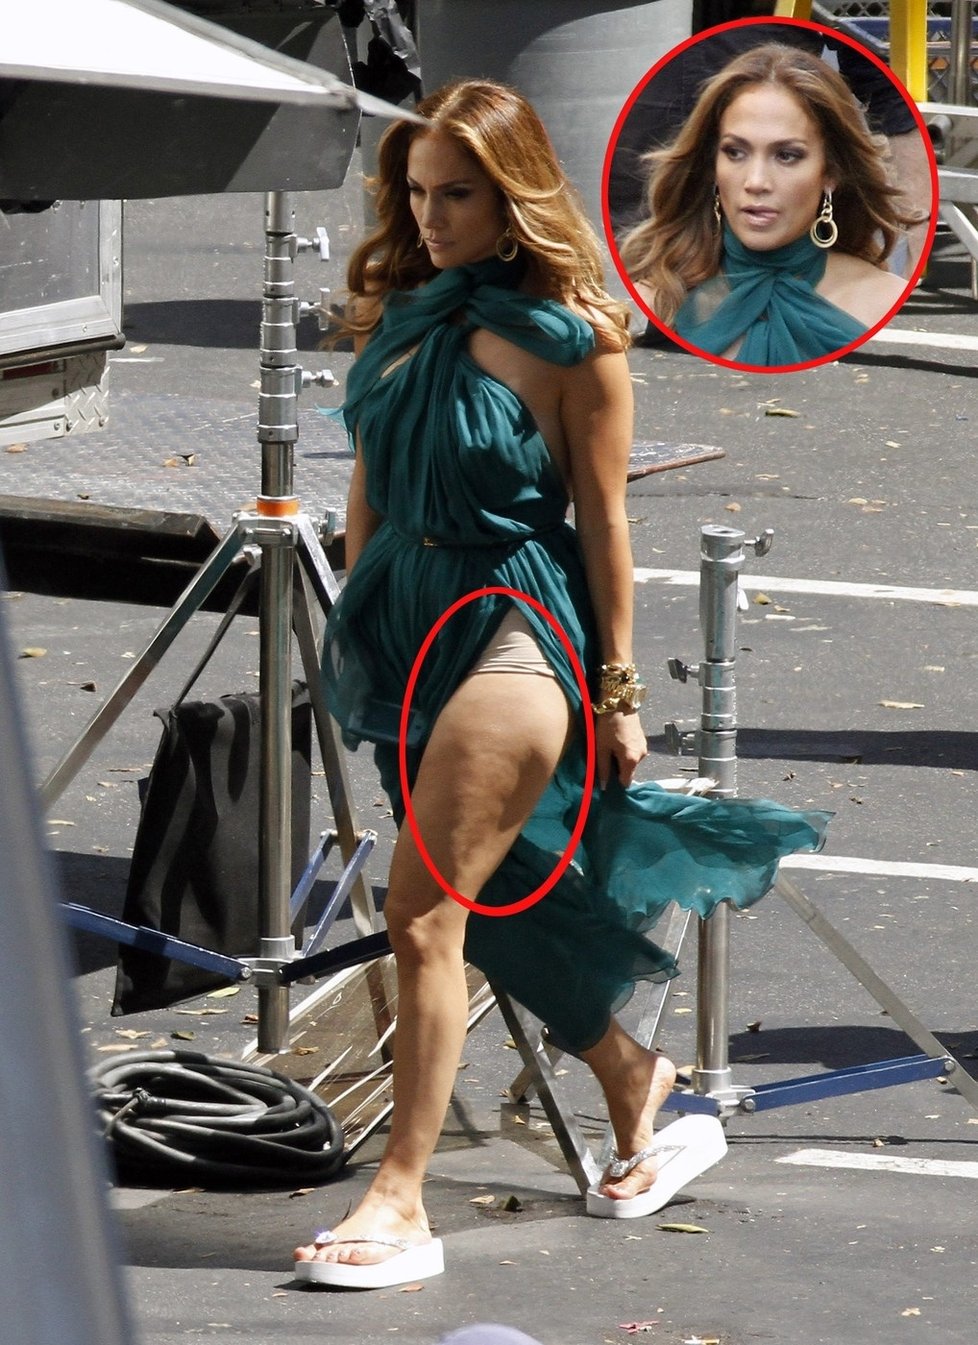 Věřte nebo ne, takhle vypadá Jennifer Lopez, krémy zřejmě nefungují tak, jak by měly...